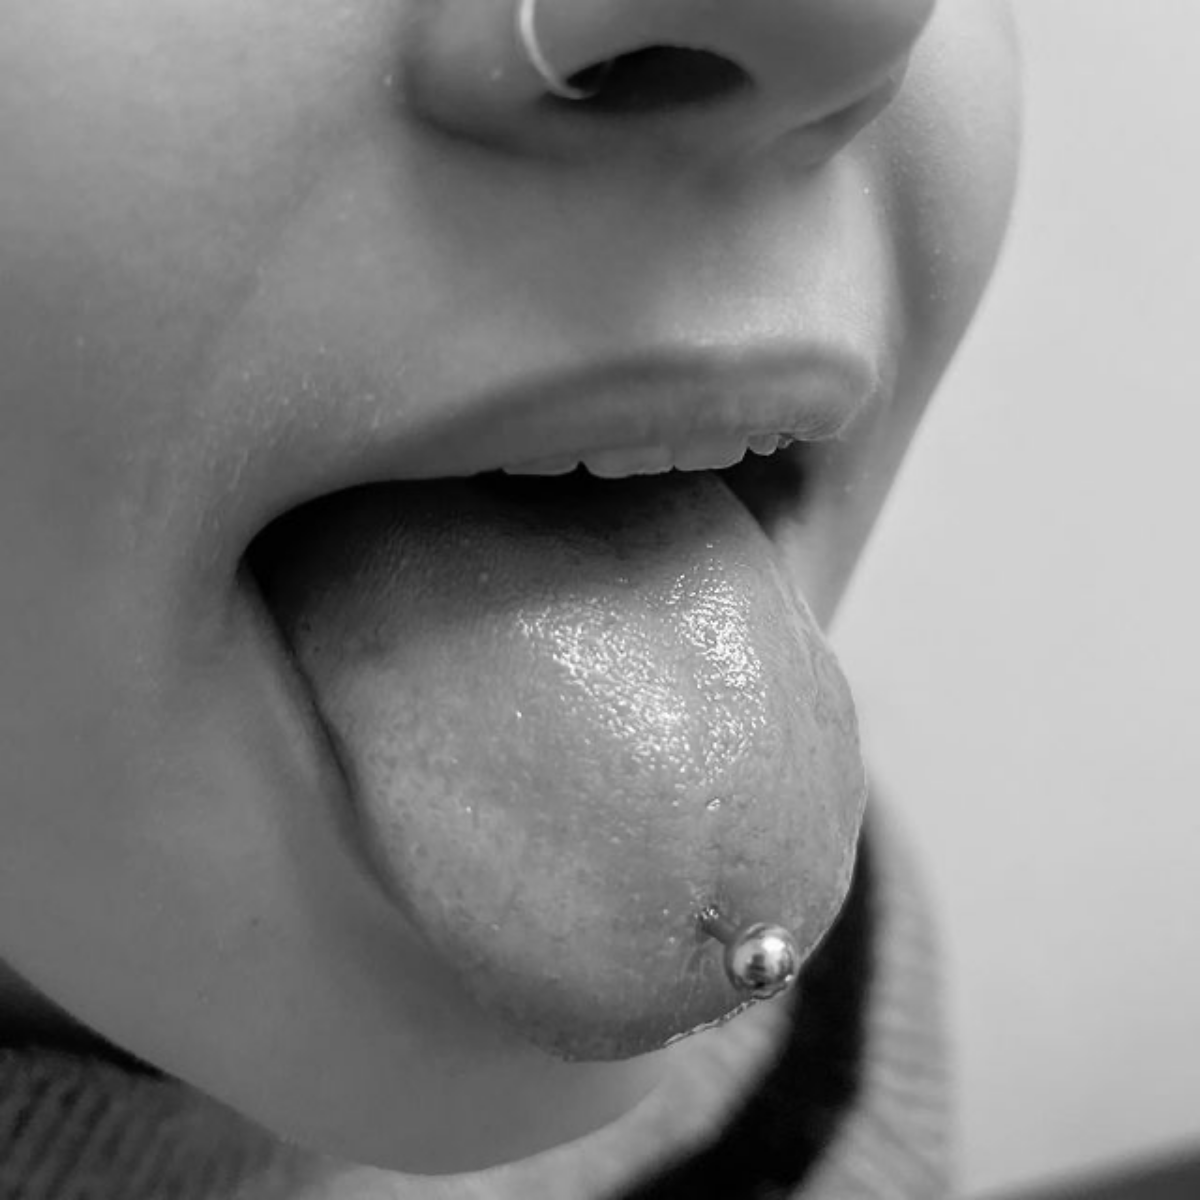 tongue tip pierced